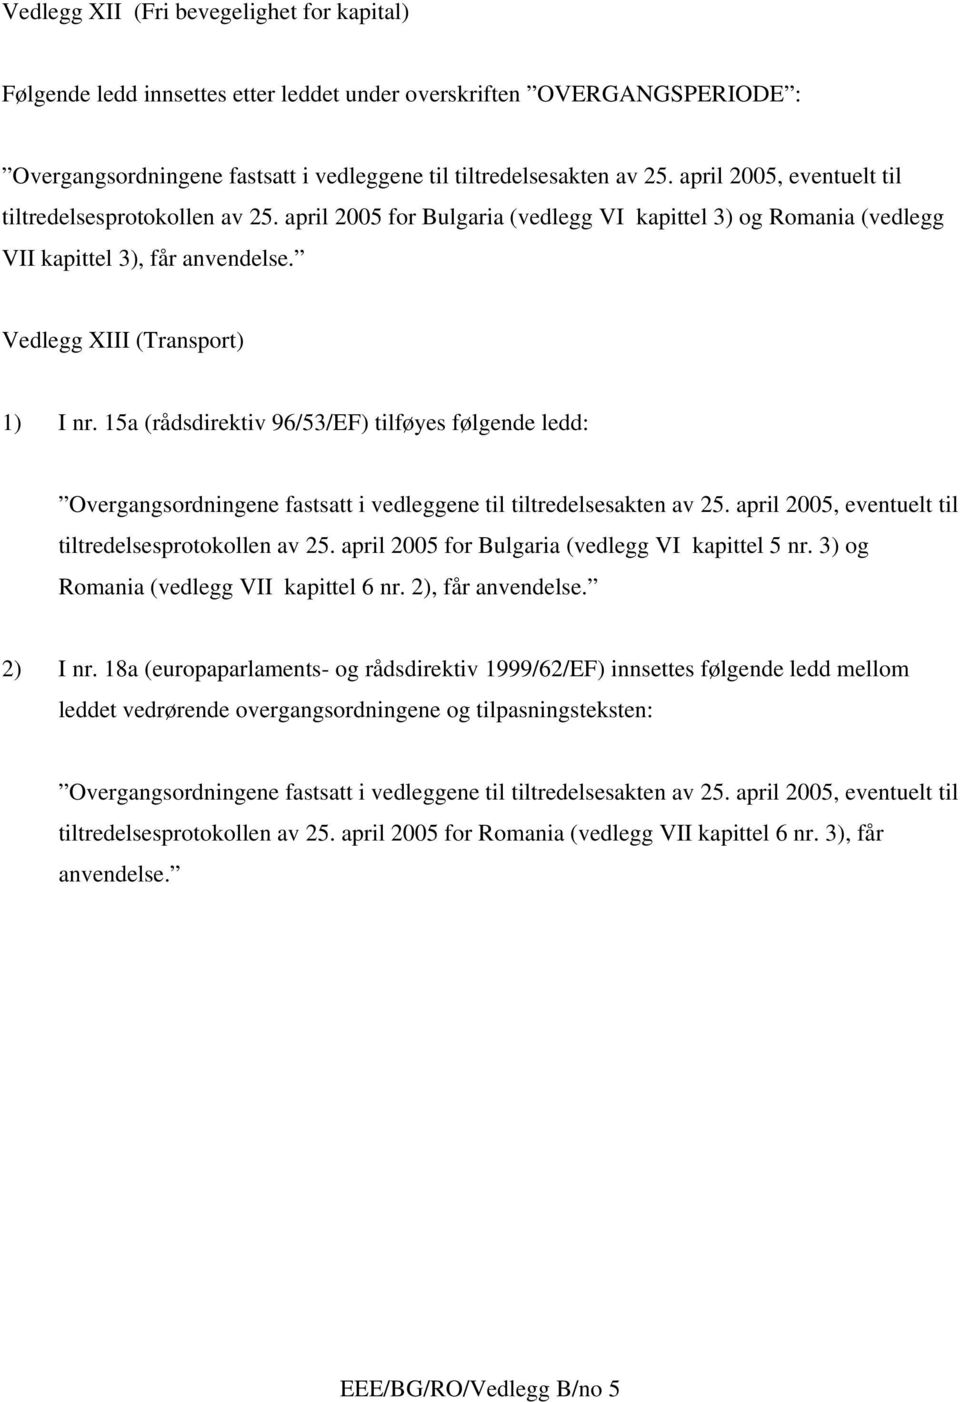 15a (rådsdirektiv 96/53/EF) tilføyes følgende ledd: tiltredelsesprotokollen av 25. april 2005 for Bulgaria (vedlegg VI kapittel 5 nr. 3) og Romania (vedlegg VII kapittel 6 nr.